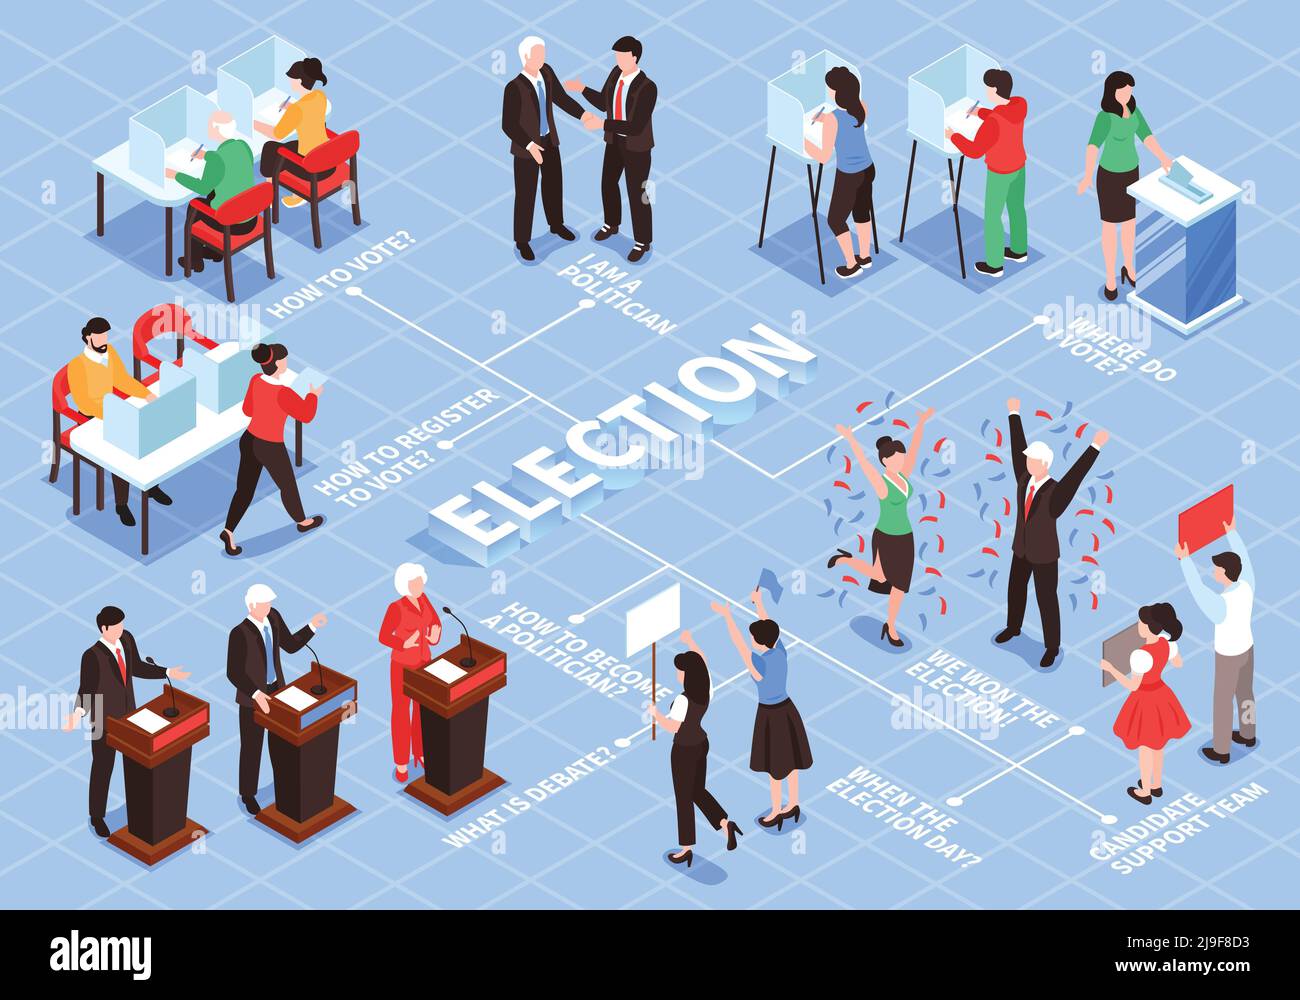 Isometrische Wahl Flussdiagramm Zusammensetzung mit menschlichen Charakteren der Wähler politisch Figuren und Teams mit Textunterschriften Vektorgrafik Stock Vektor